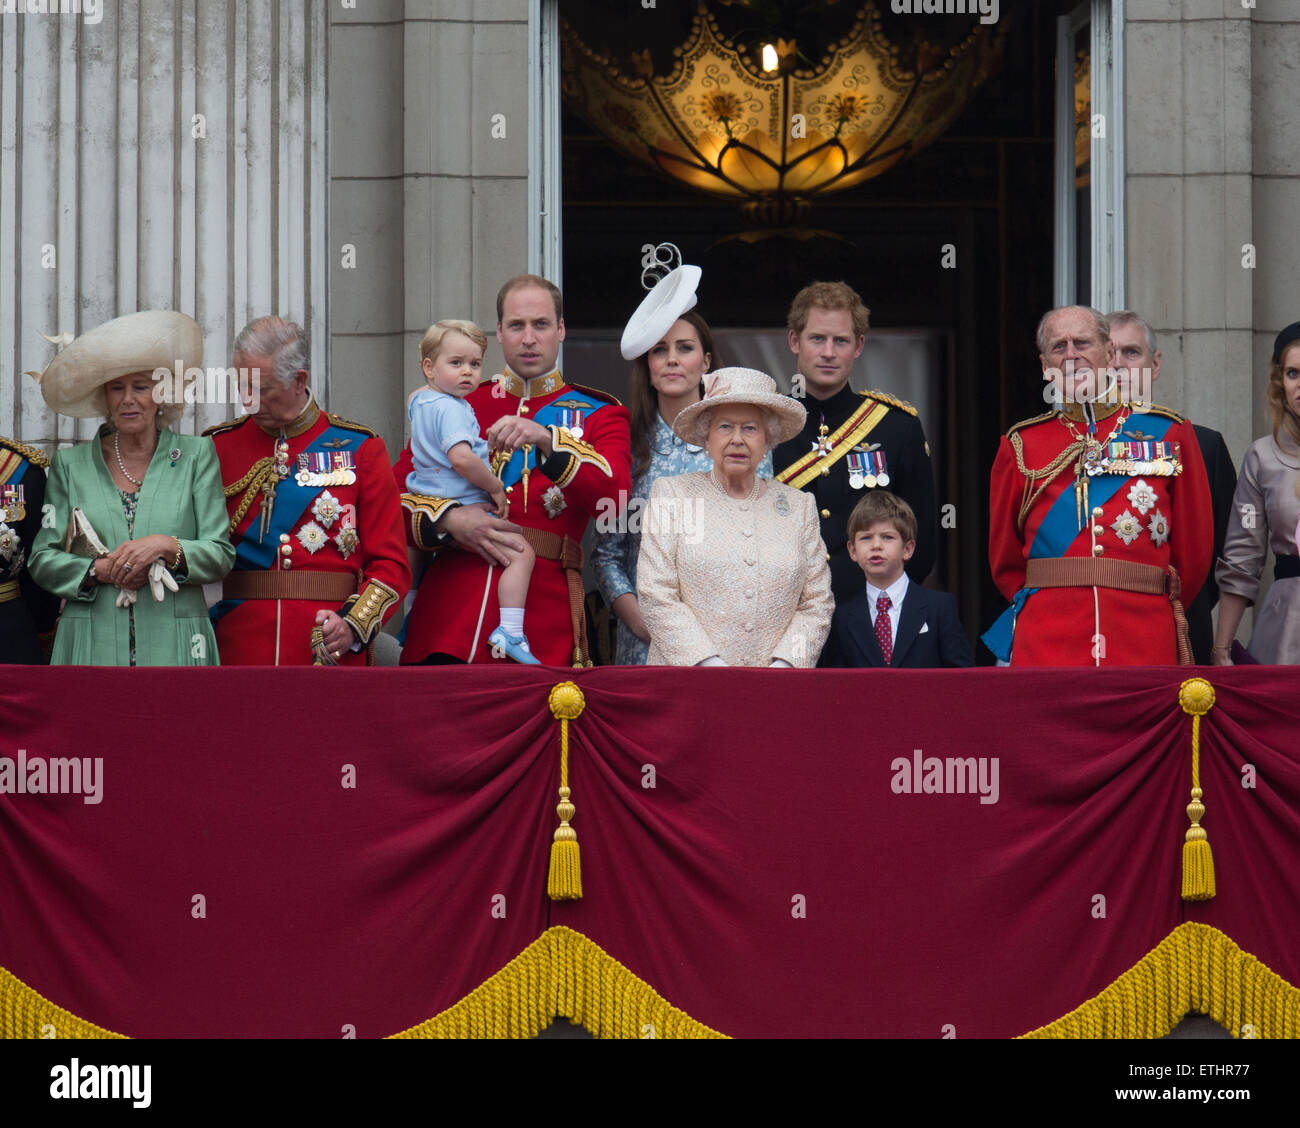 Prince George's première apparition sur le balcon de Buckingham Palace avec la reine Elizabeth et la famille royale britannique. Banque D'Images